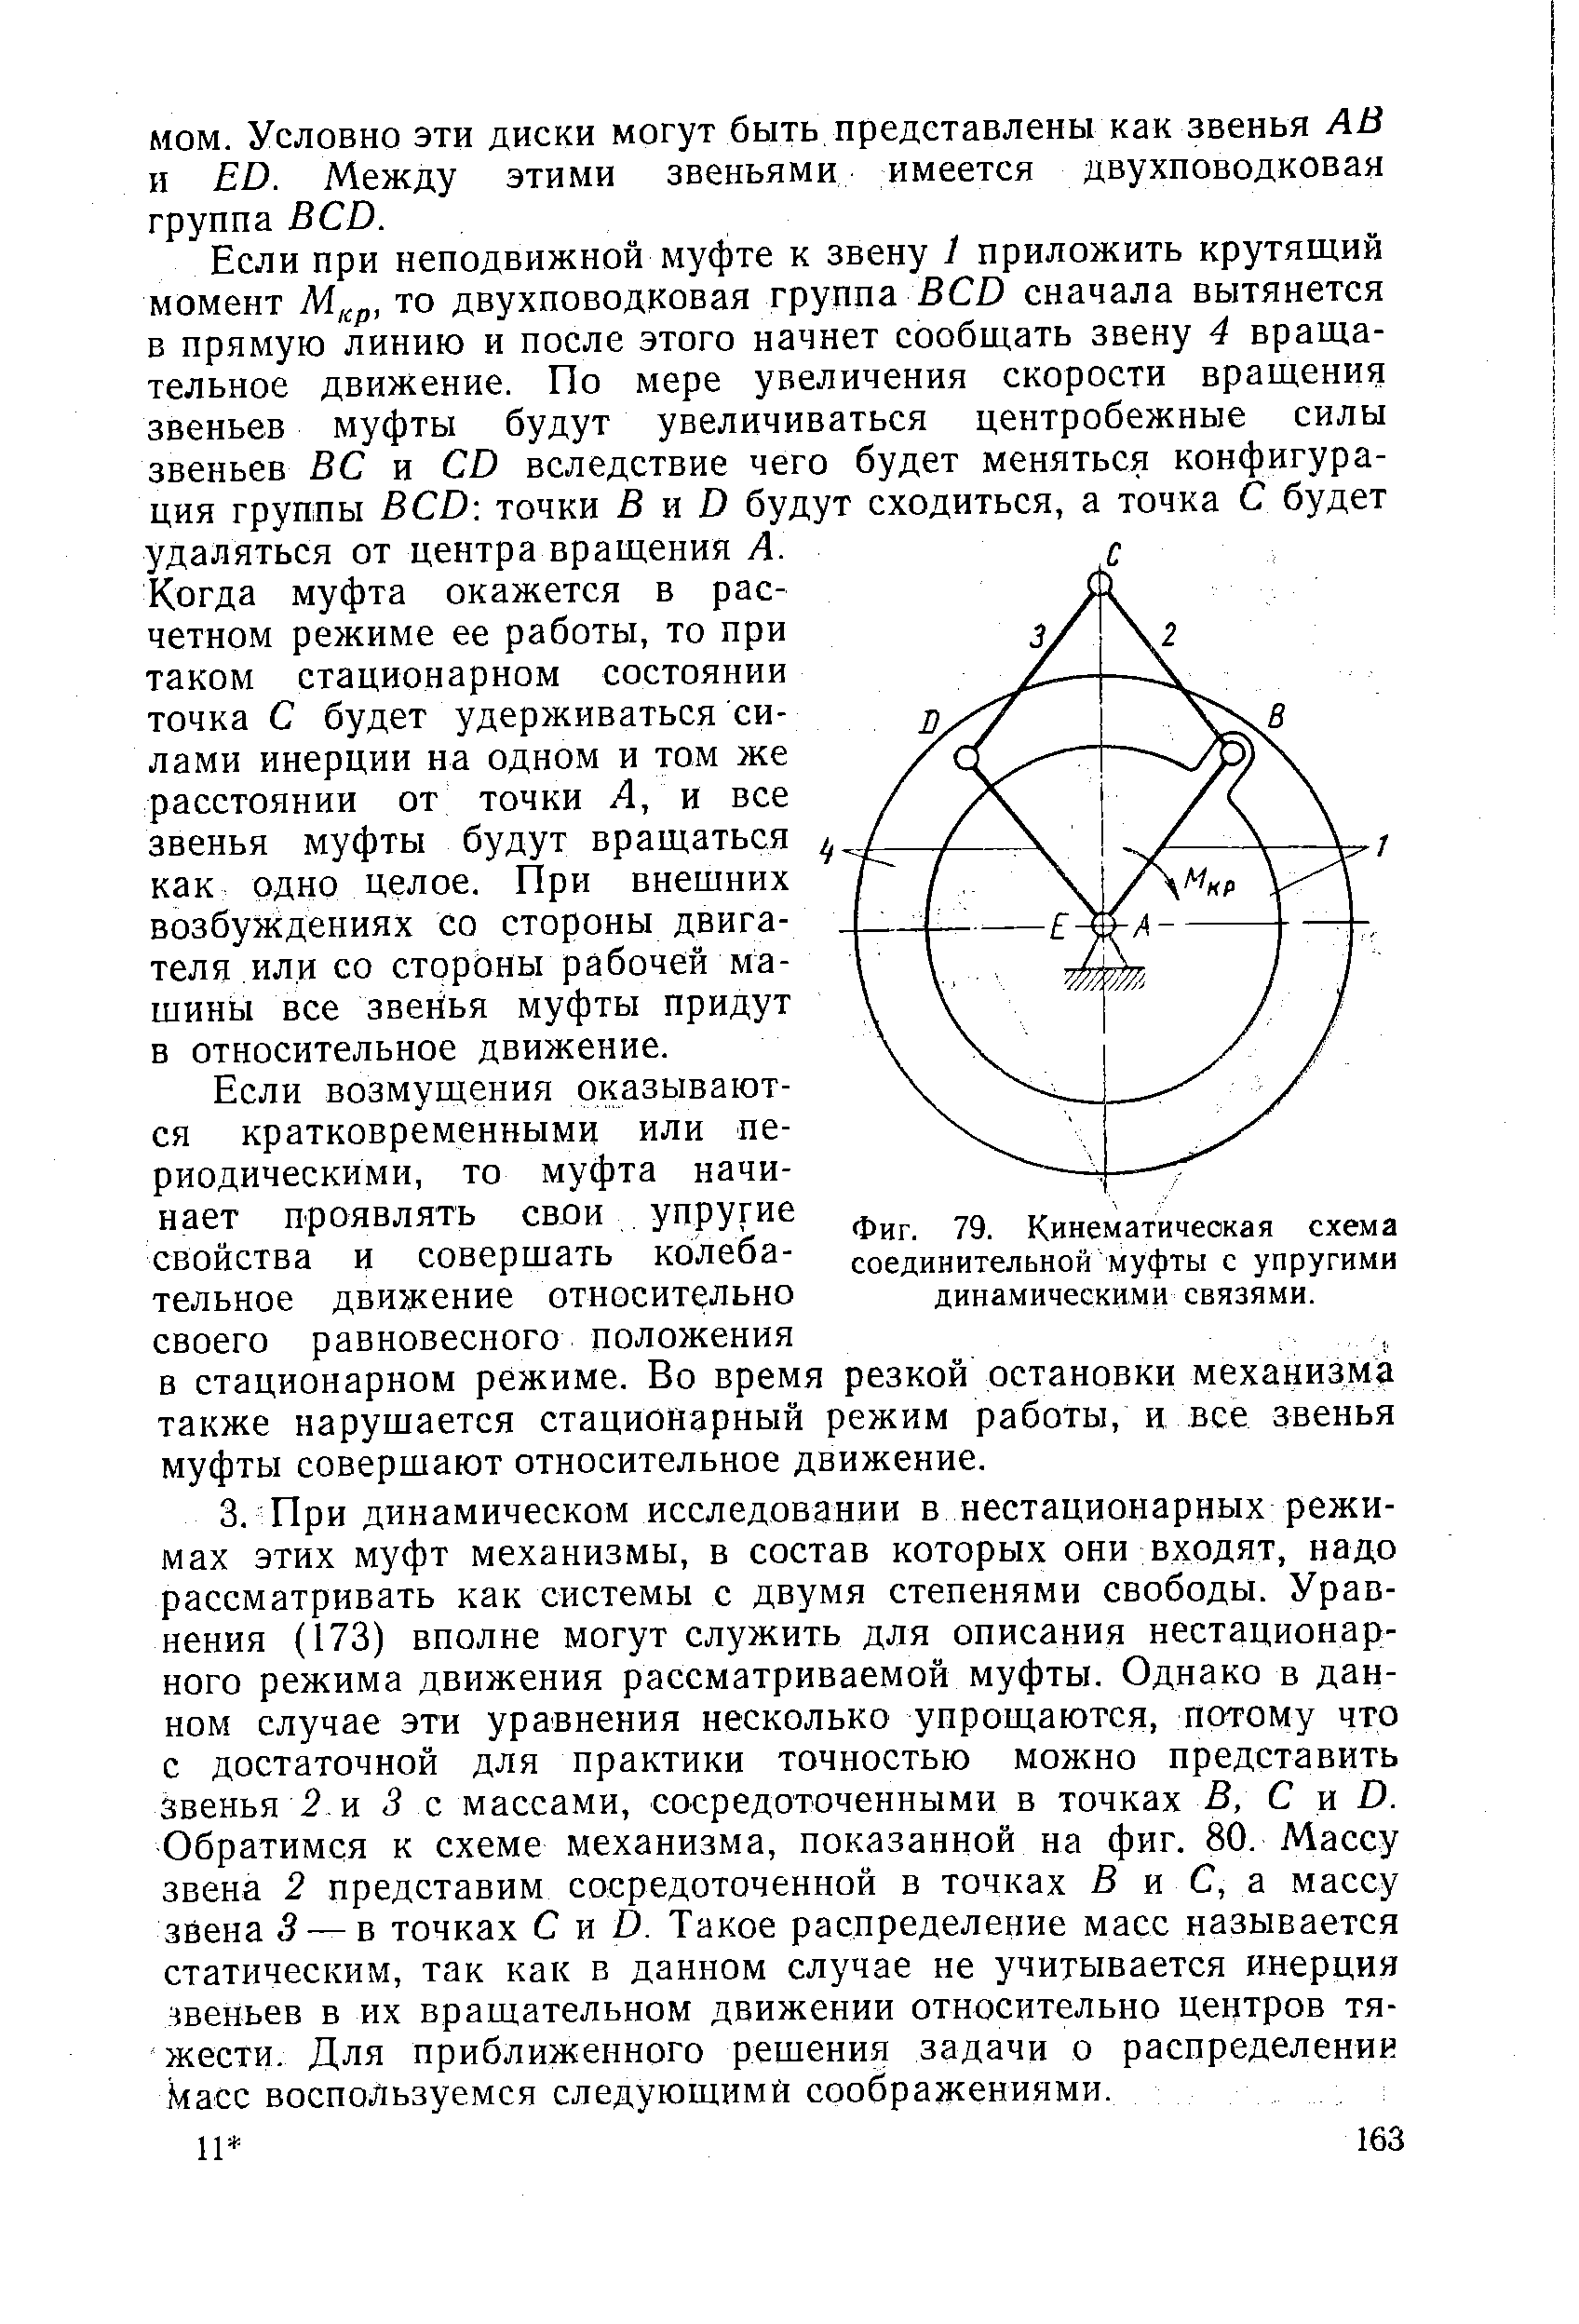 Фиг. 79. Кинематическая схема соединительной муфты с упругими динамическими связями.
